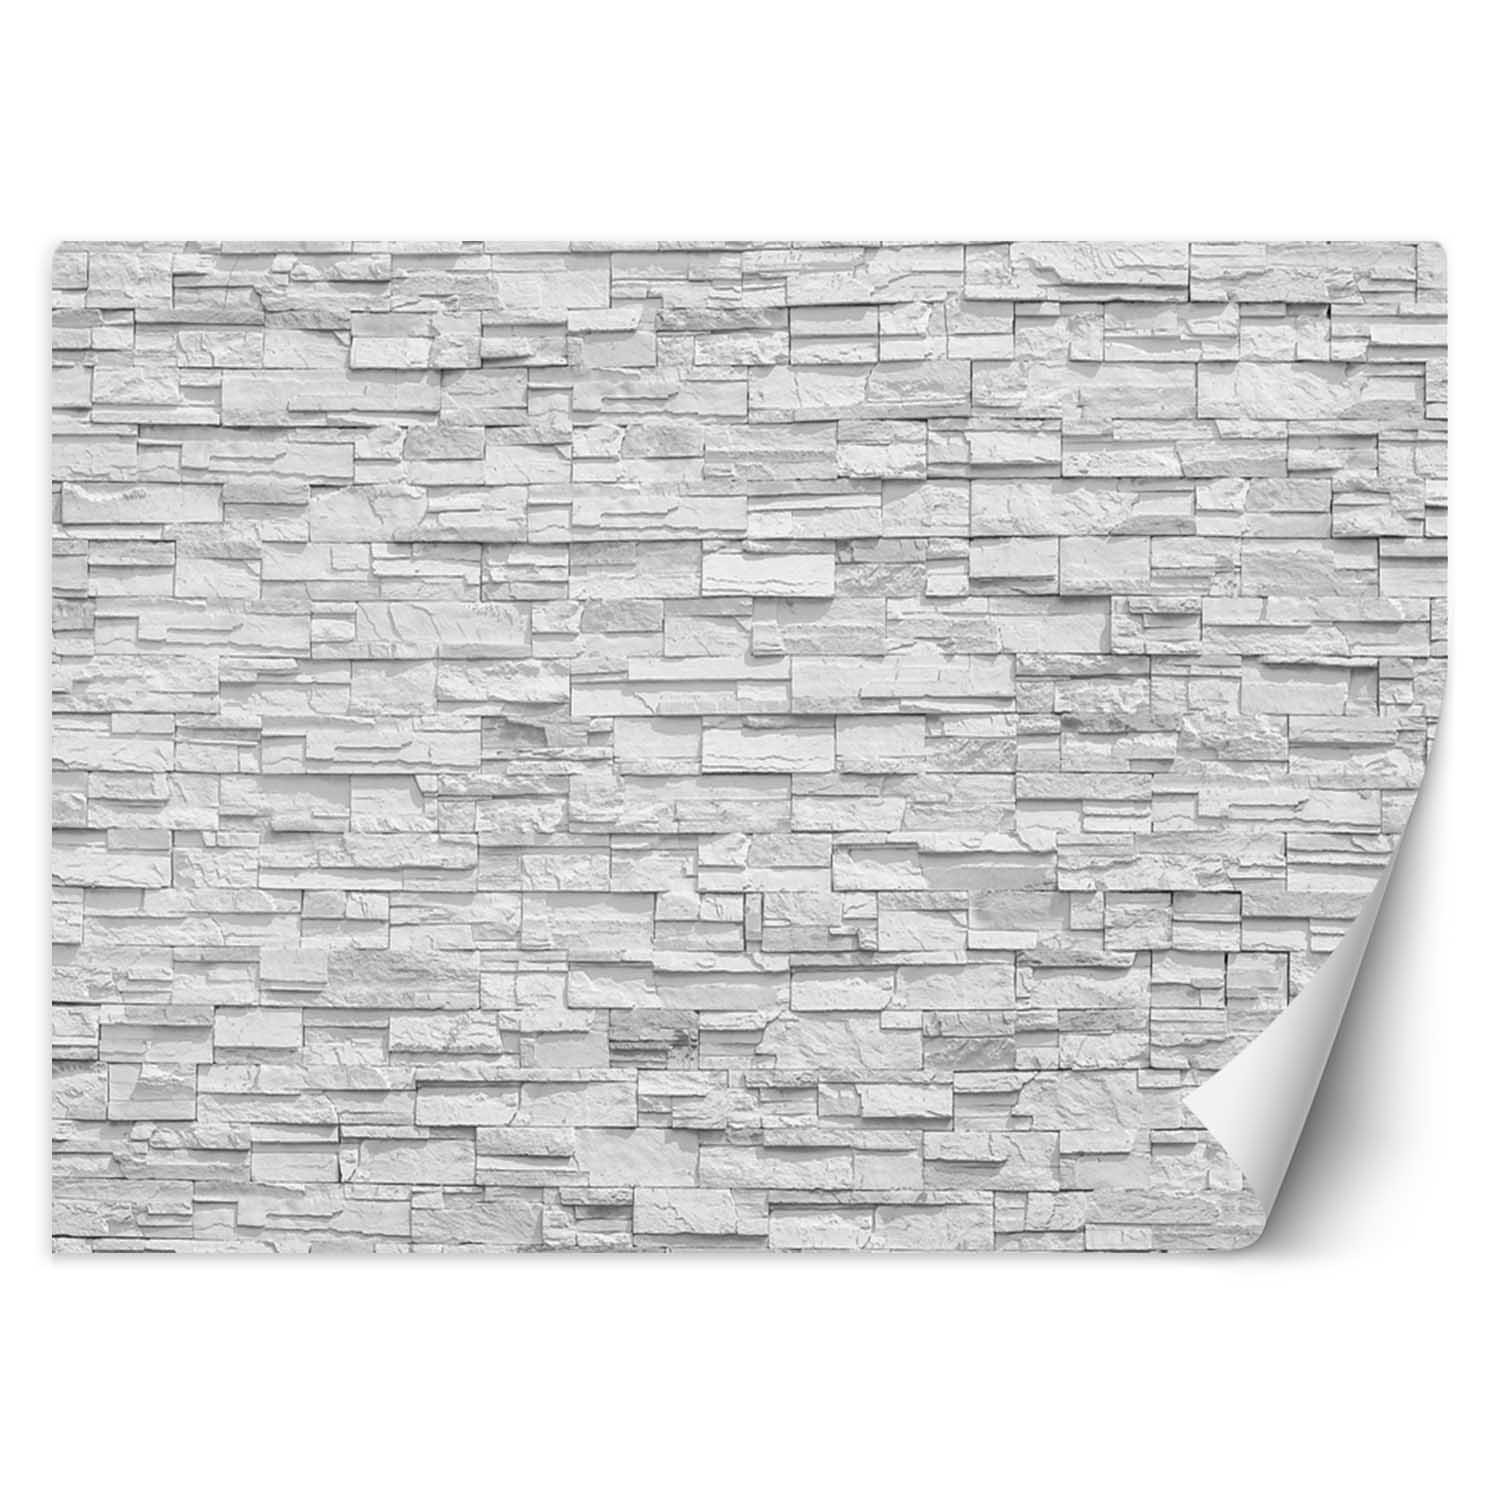 Trend24 – Behang – Witte Stenen Muur – Vliesbehang – Behang Woonkamer – Fotobehang – 350×245 cm – Incl. behanglijm